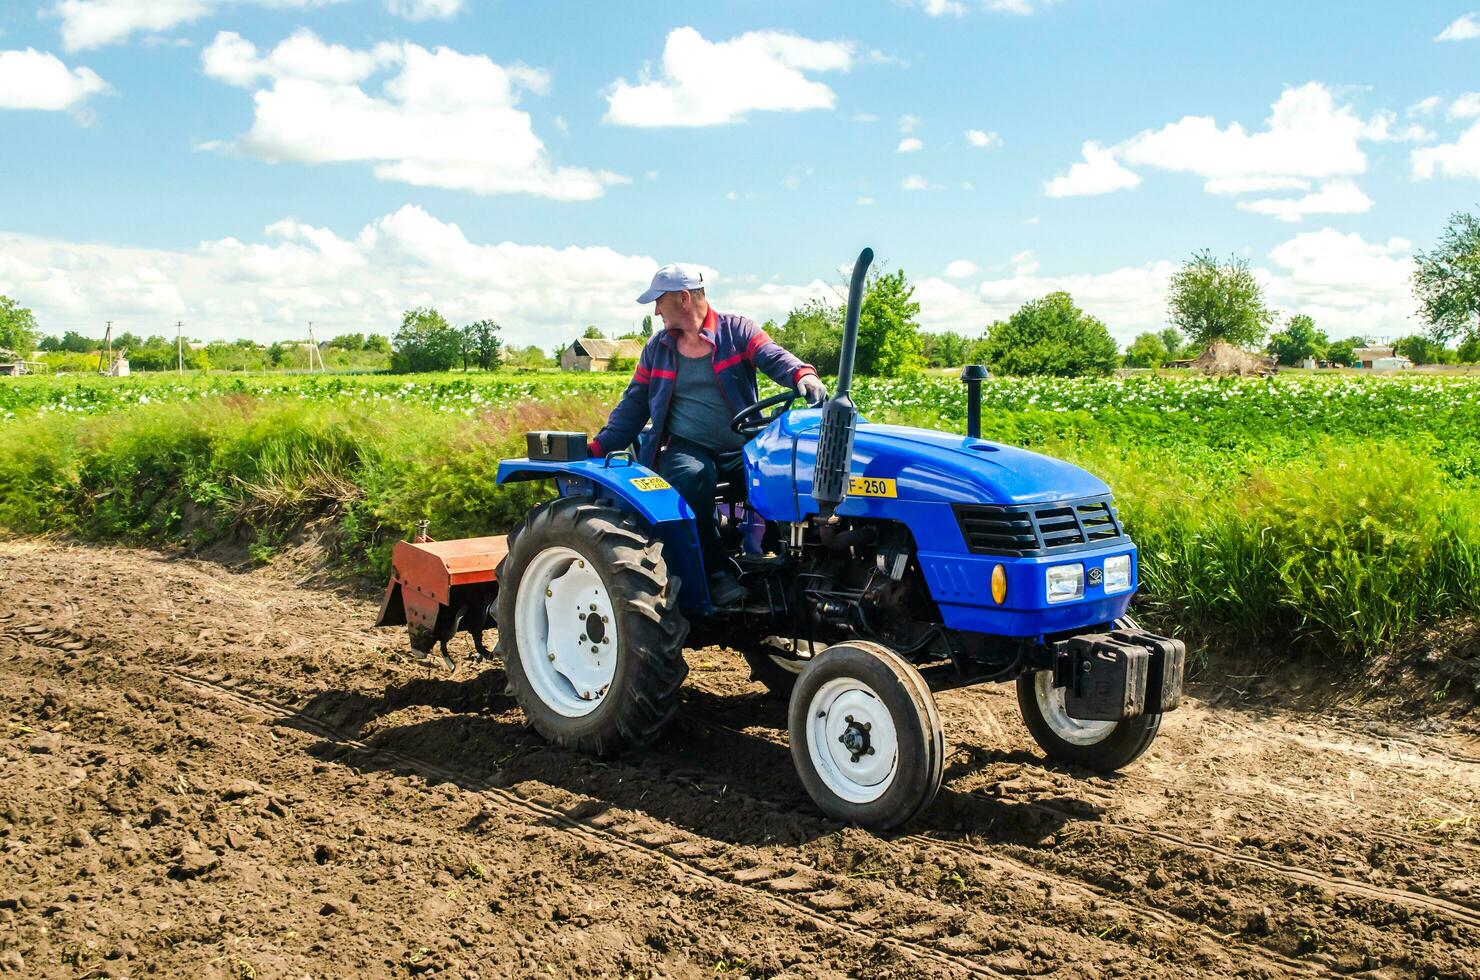 kherson oblast, ukraina - Maj 28, 2020 en jordbrukare med en odling enhet på en traktor rider till odla en fält. jordbruksnäringen och jordbruksindustrin. lossna yta, landa odling. plöjning fält. foto